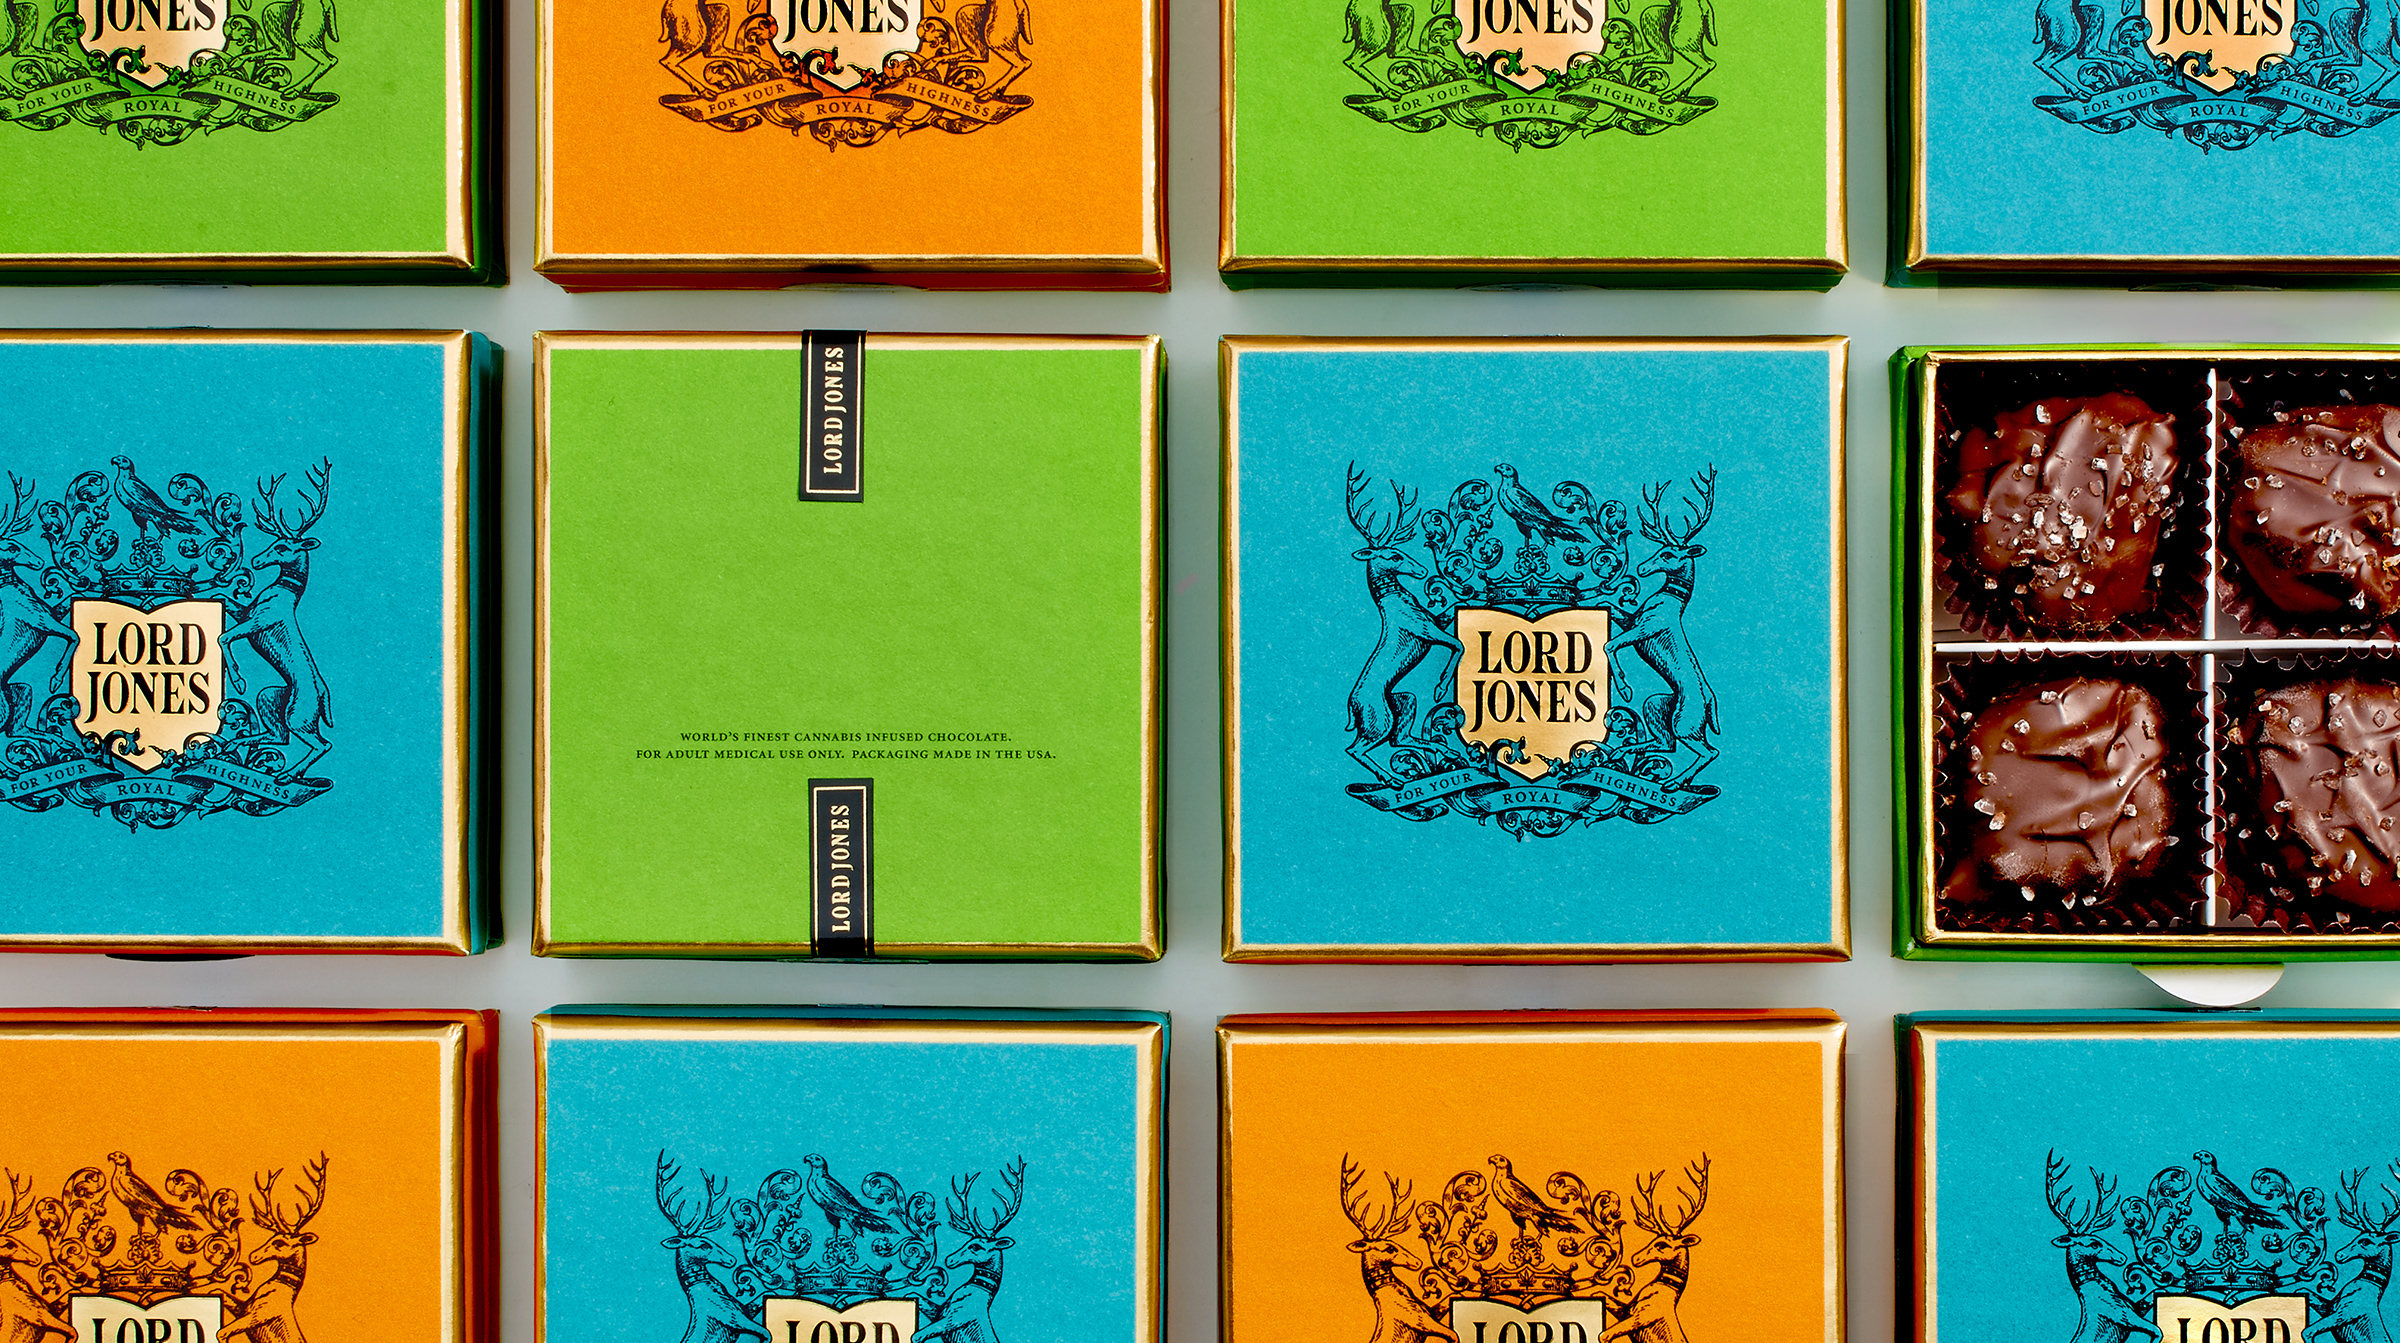 Lord Jones packaging design by Werner Design Werks